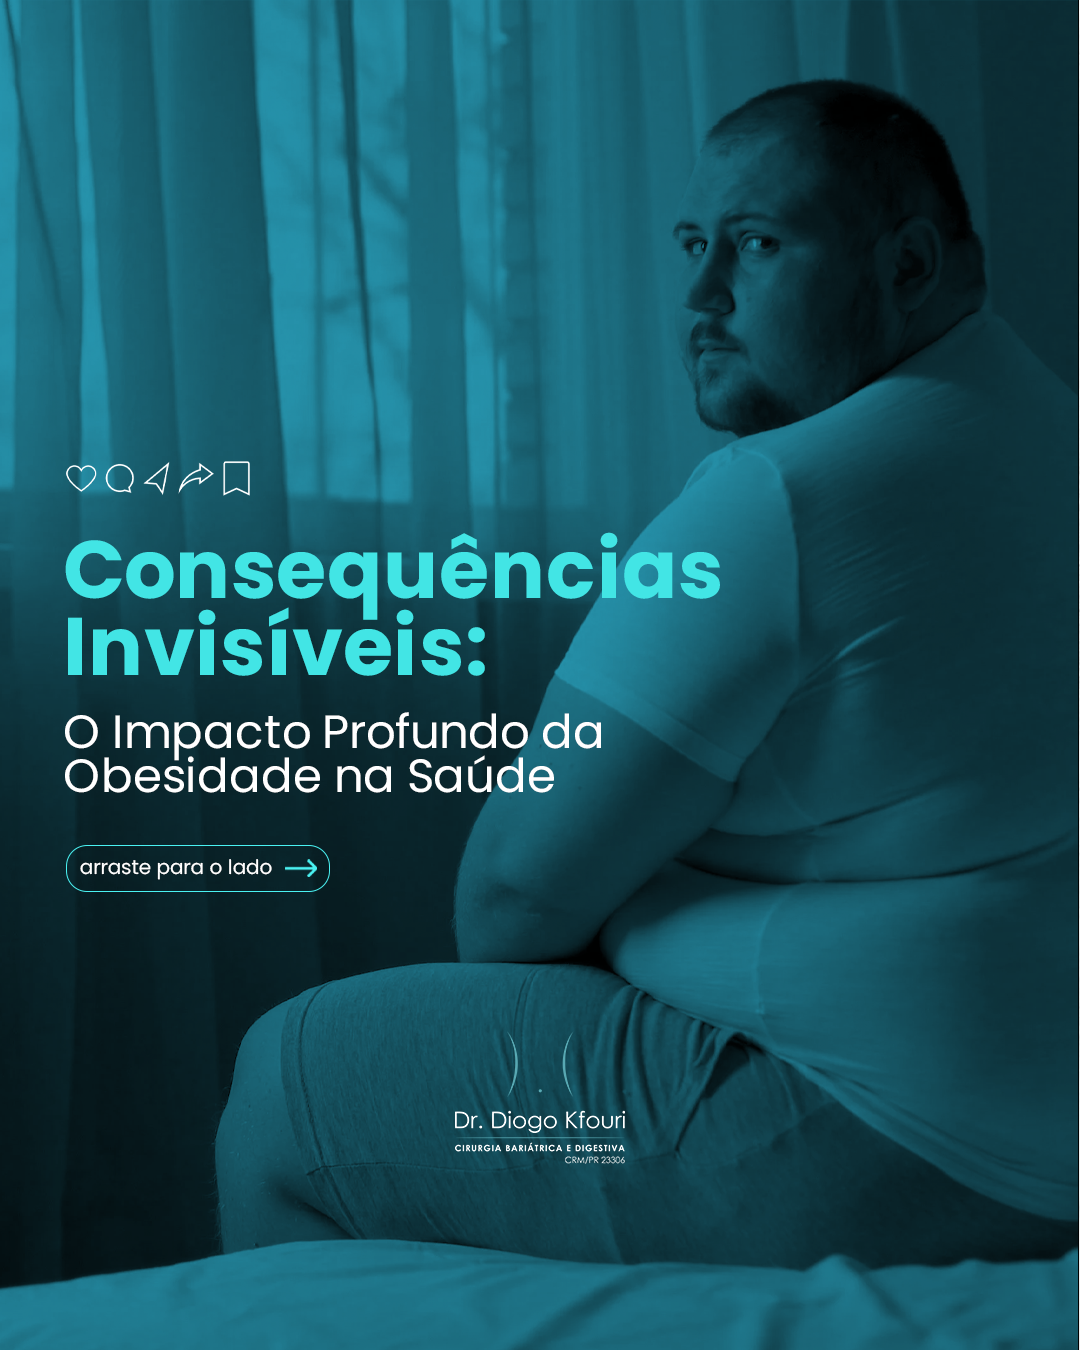 : Consequências Invisíveis da Obesidade: Profundo Impacto na Saúde e Qualidade de Vida